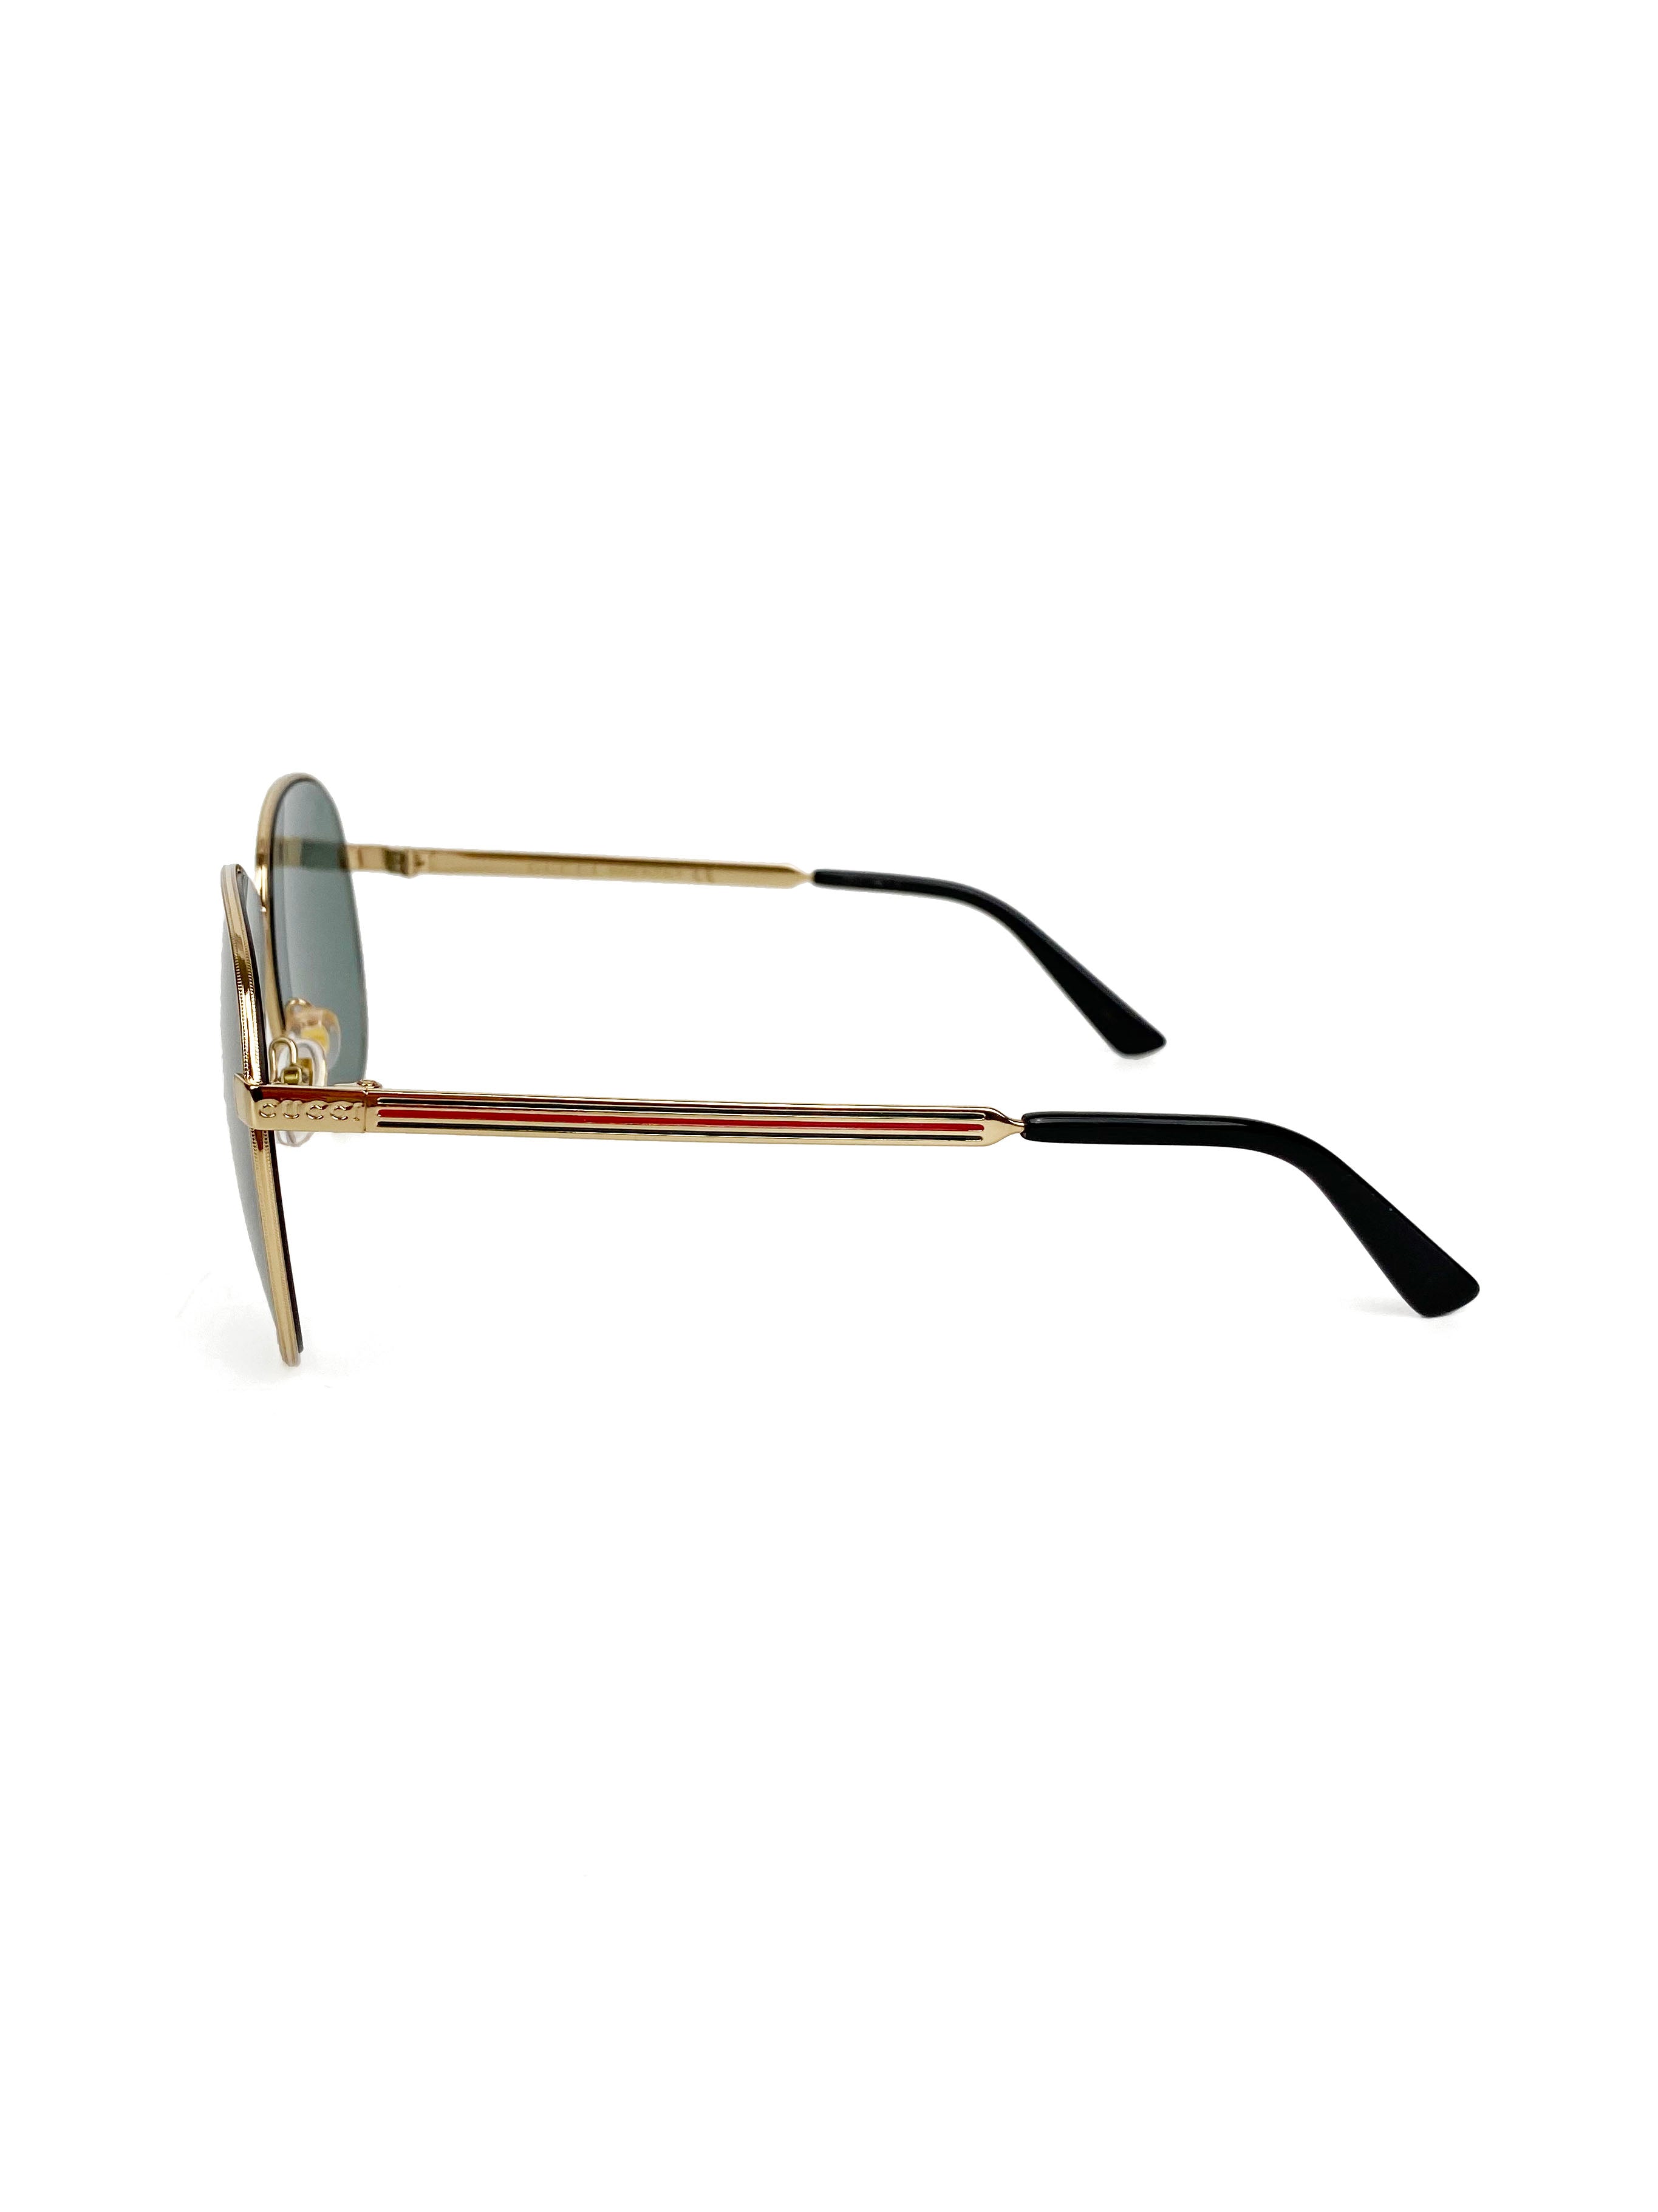 Gucci Aviator Sunglasses GG0138S